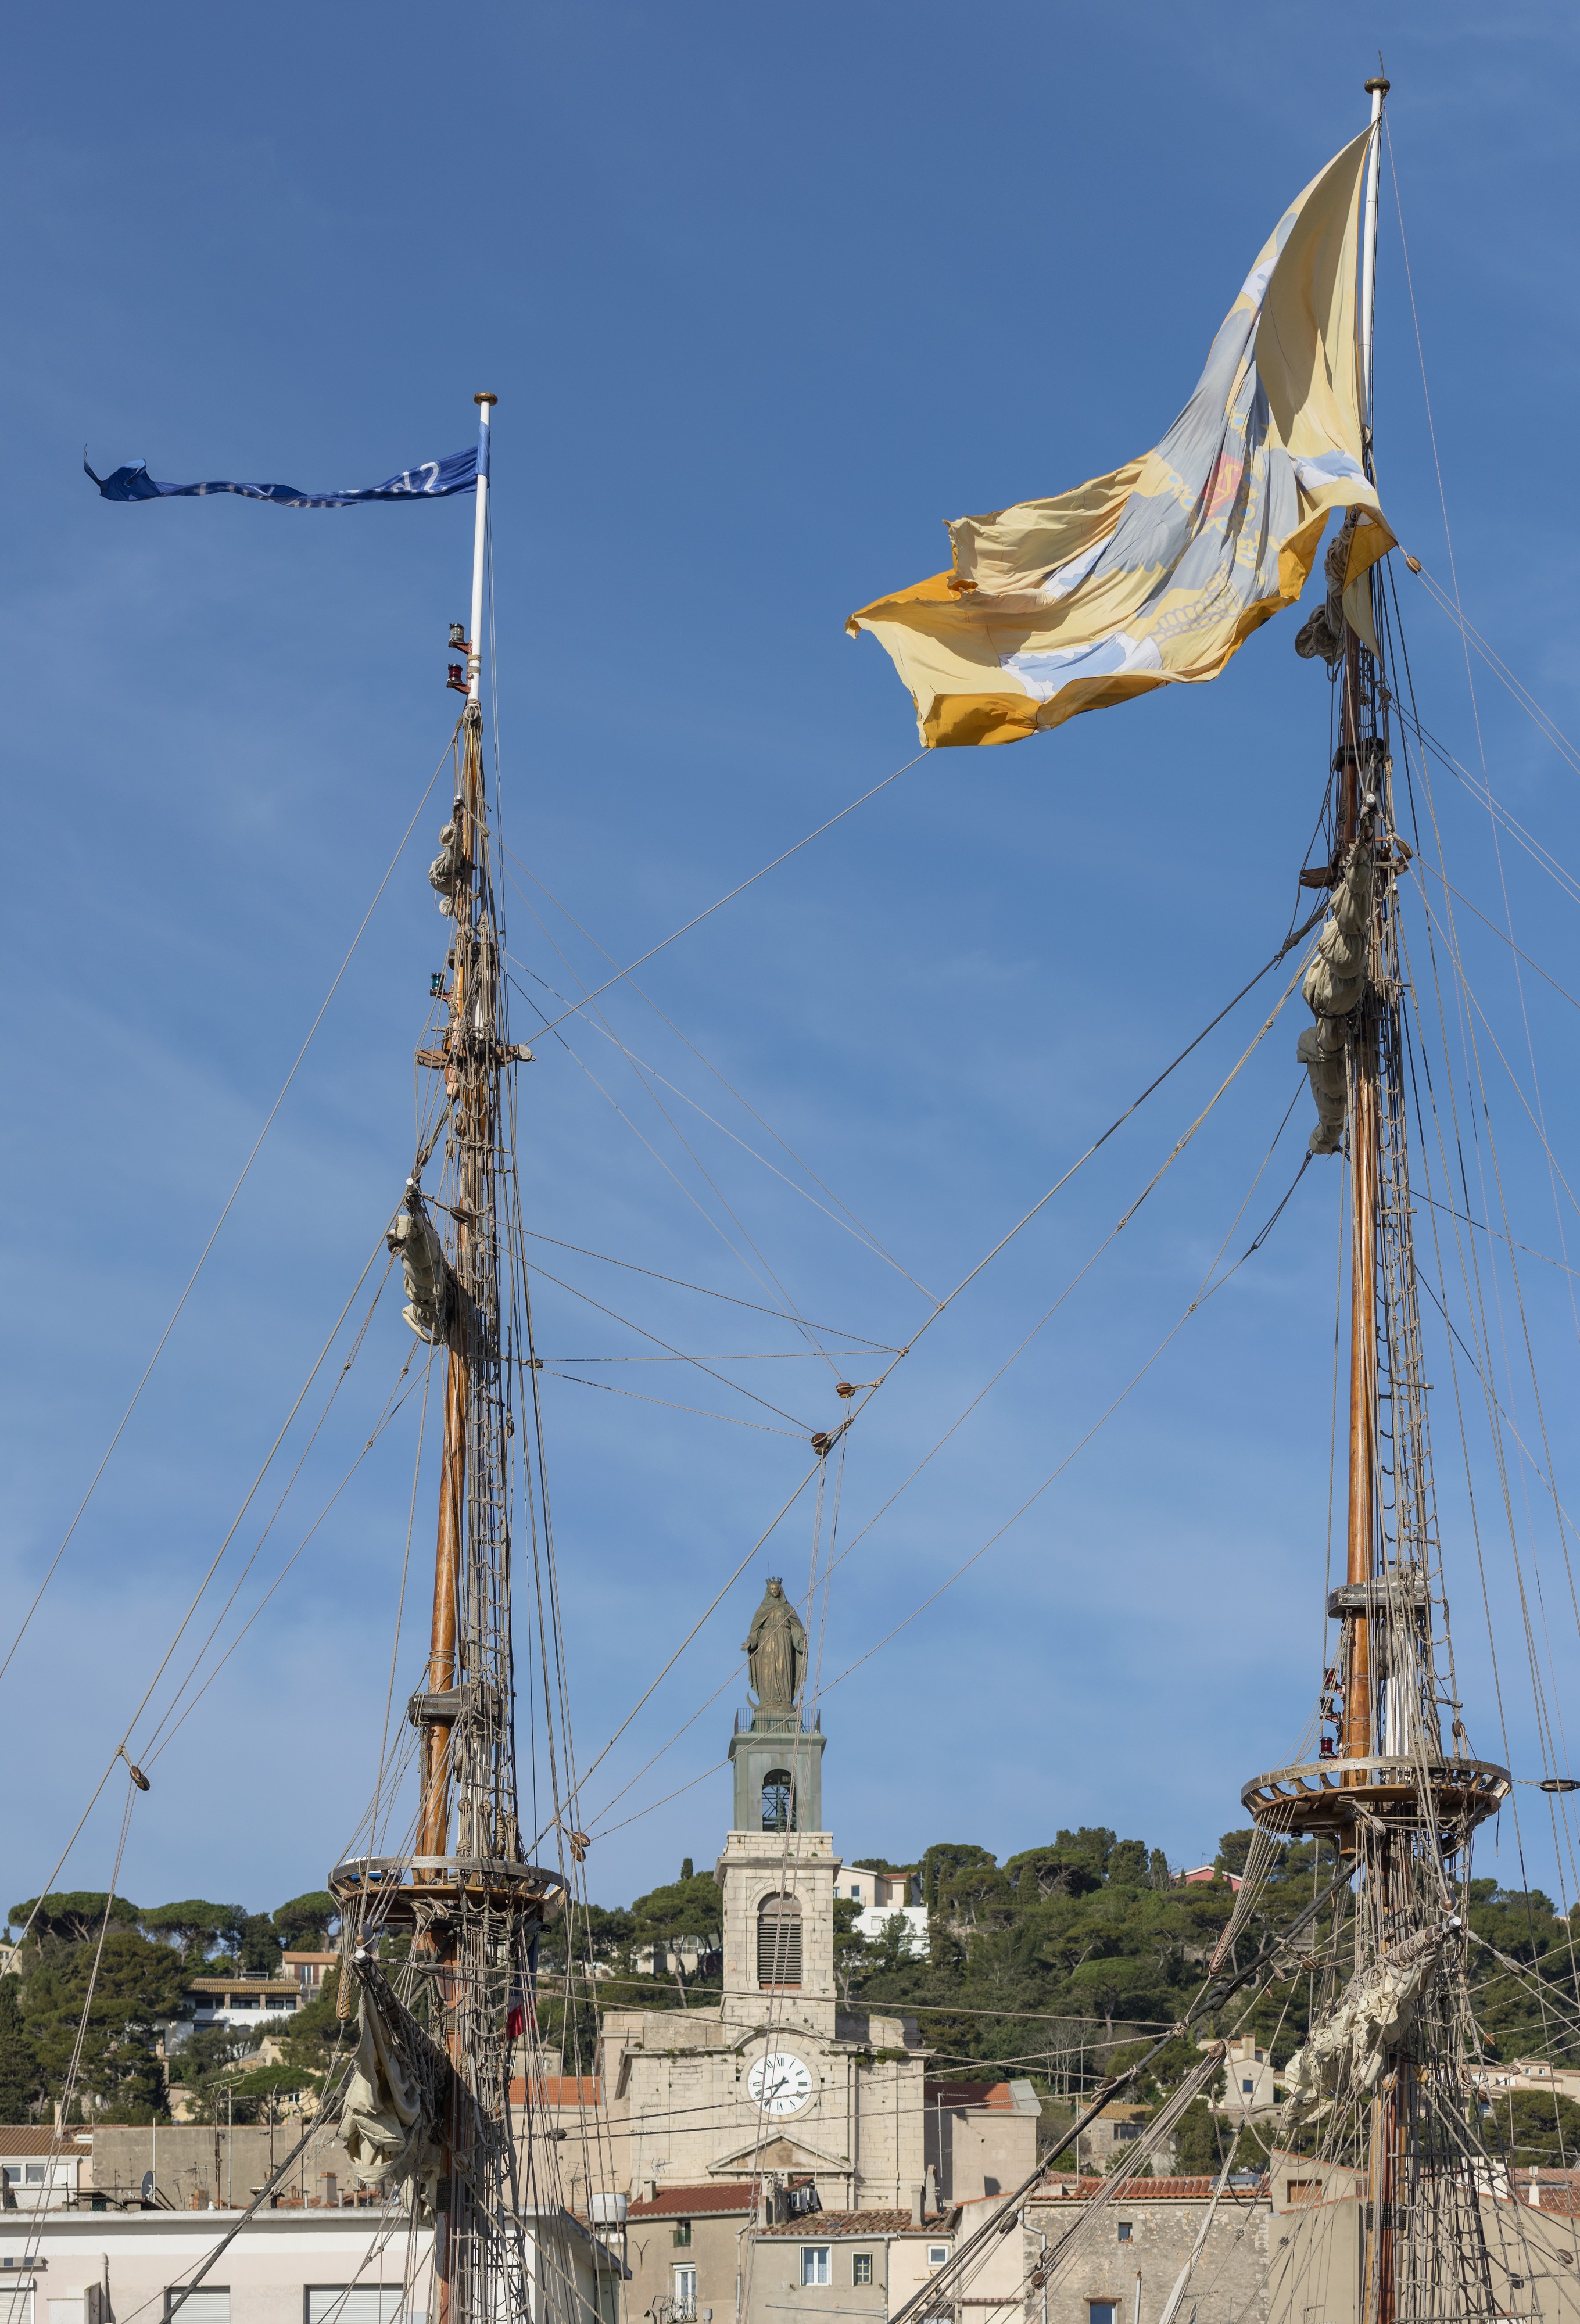 The masts of the Shtandart (ship, 1999), Sète cf01